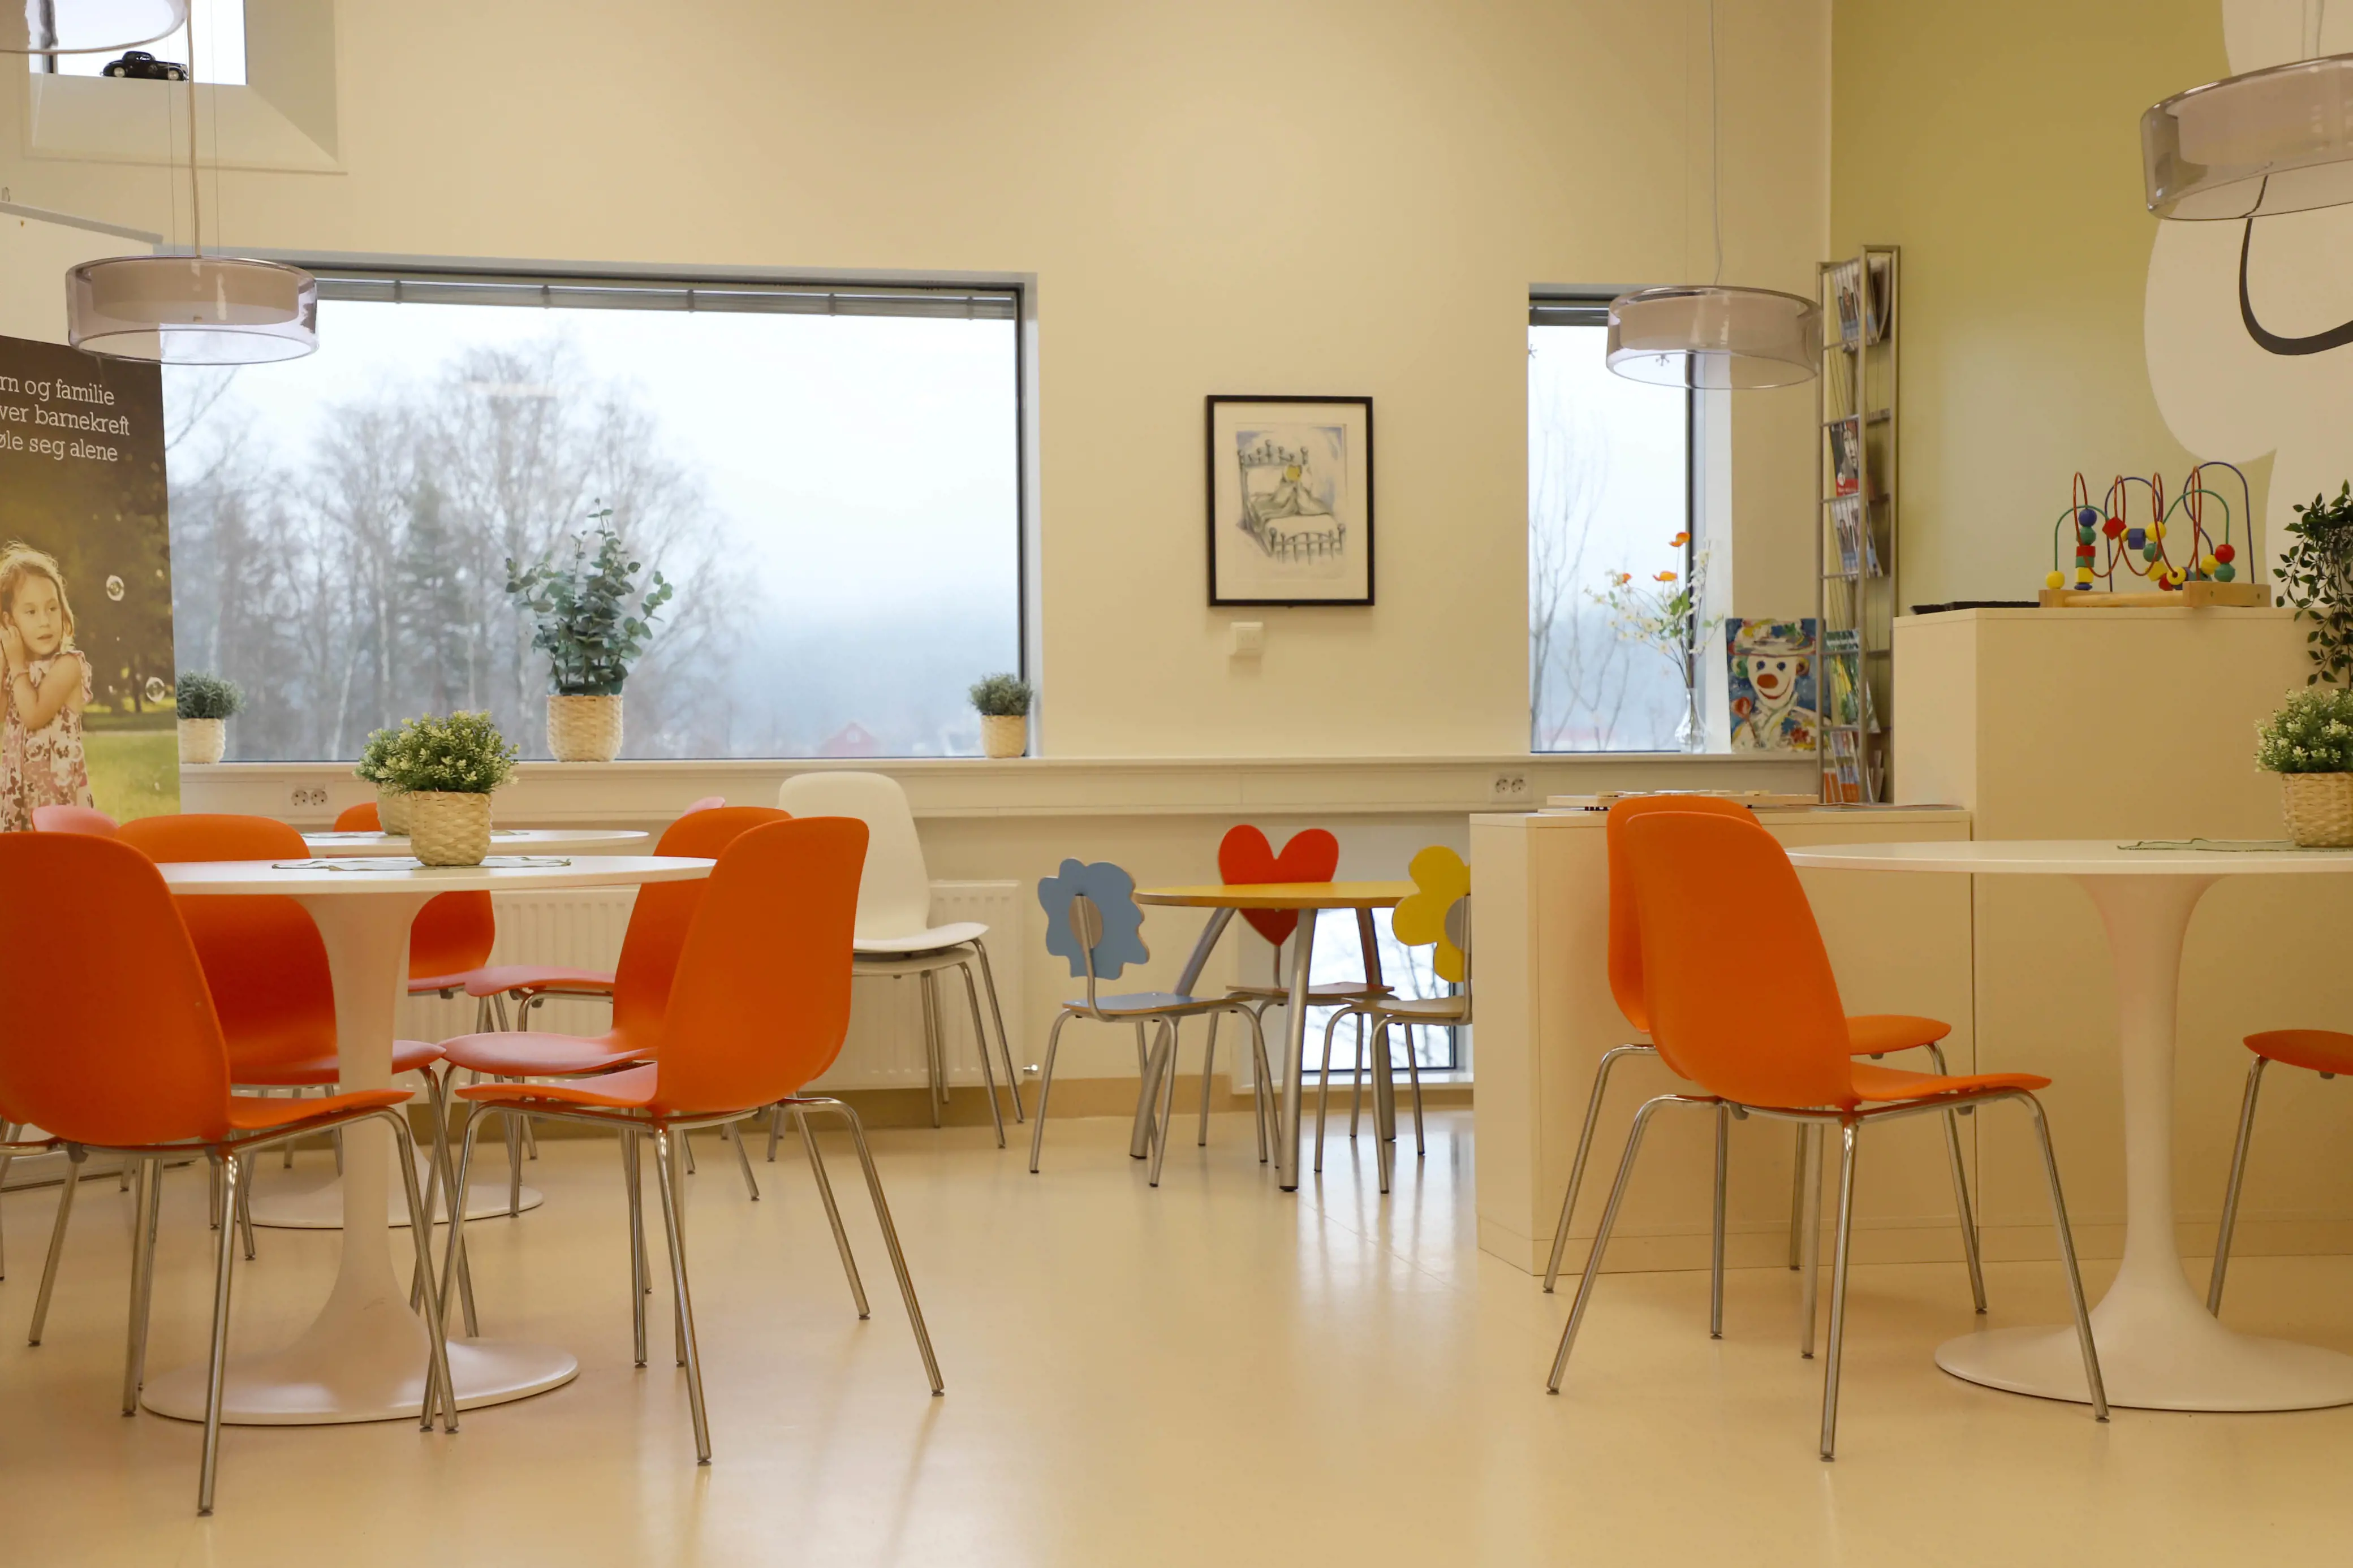 En kantine med hvite vegger, hvite bord og oransje stoler.